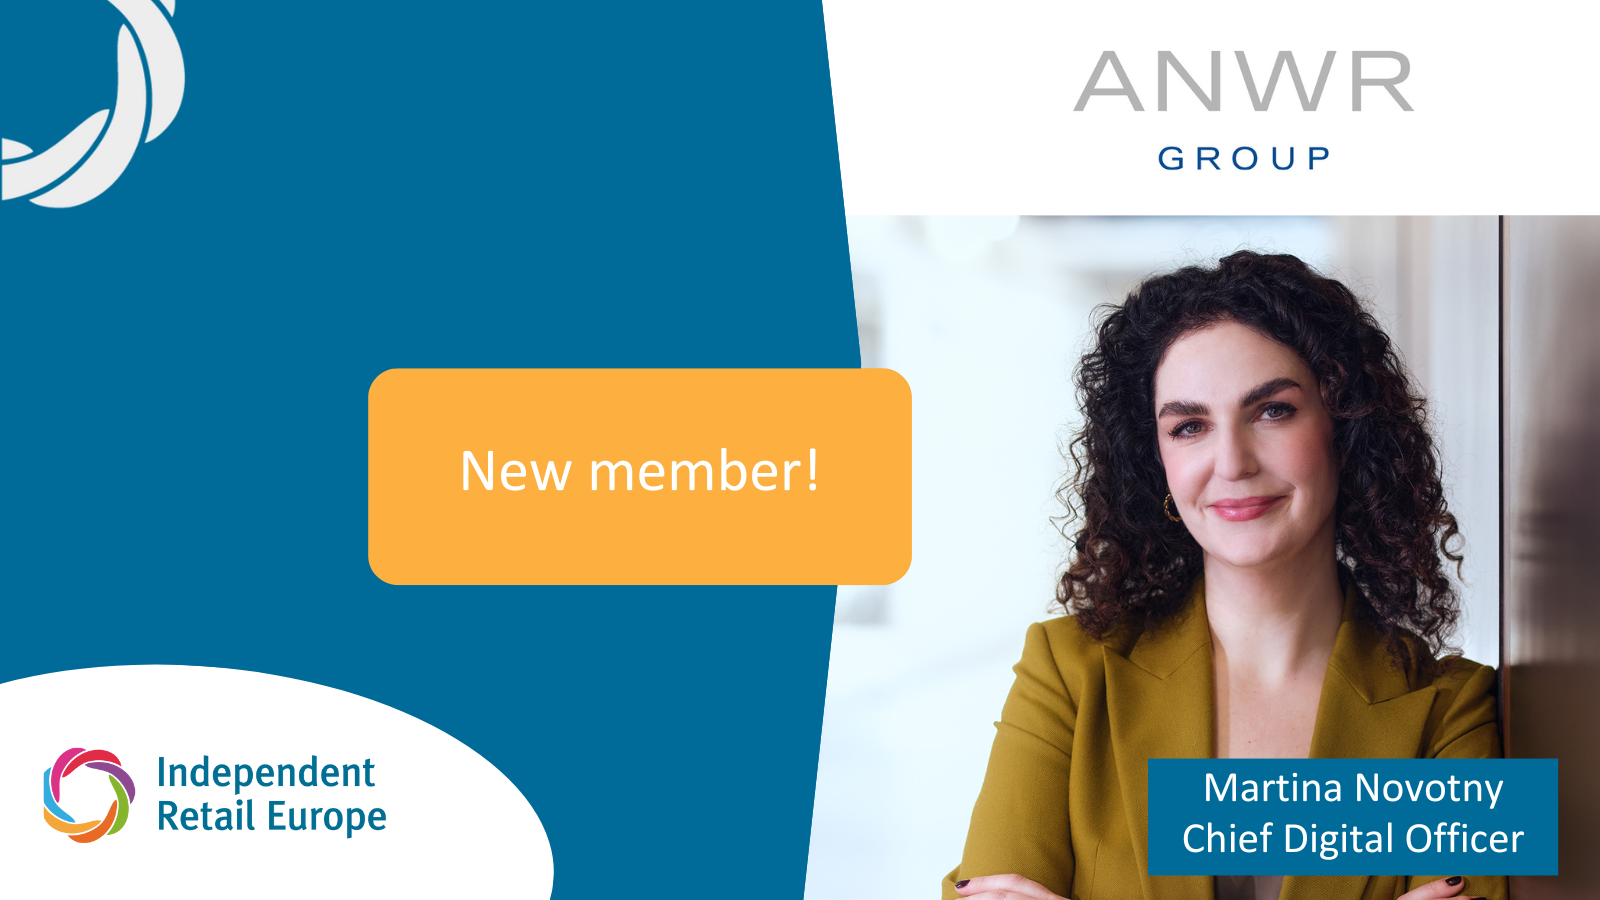 Independent Retail Europe a l’immense plaisir d’accueillir un nouveau membre : bienvenue à ANWR GROUP !